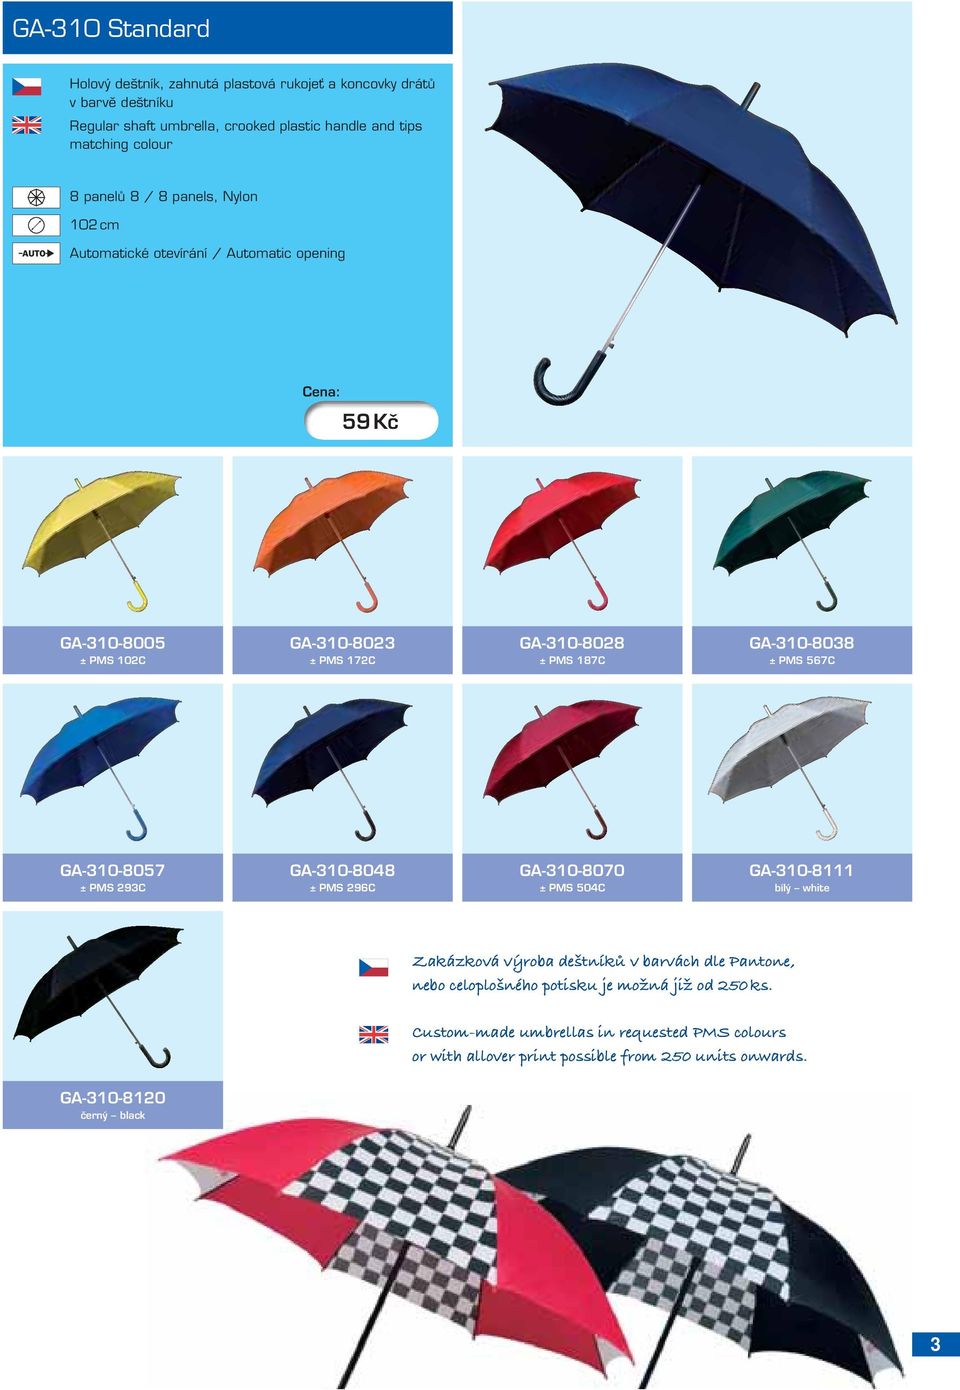 PMS 567C GA-310-8057 ± PMS 293C GA-310-8048 ± PMS 296C GA-310-8070 ± PMS 504C GA-310-8111 bílý white Zakázková výroba deštníků v barvách dle Pantone, nebo